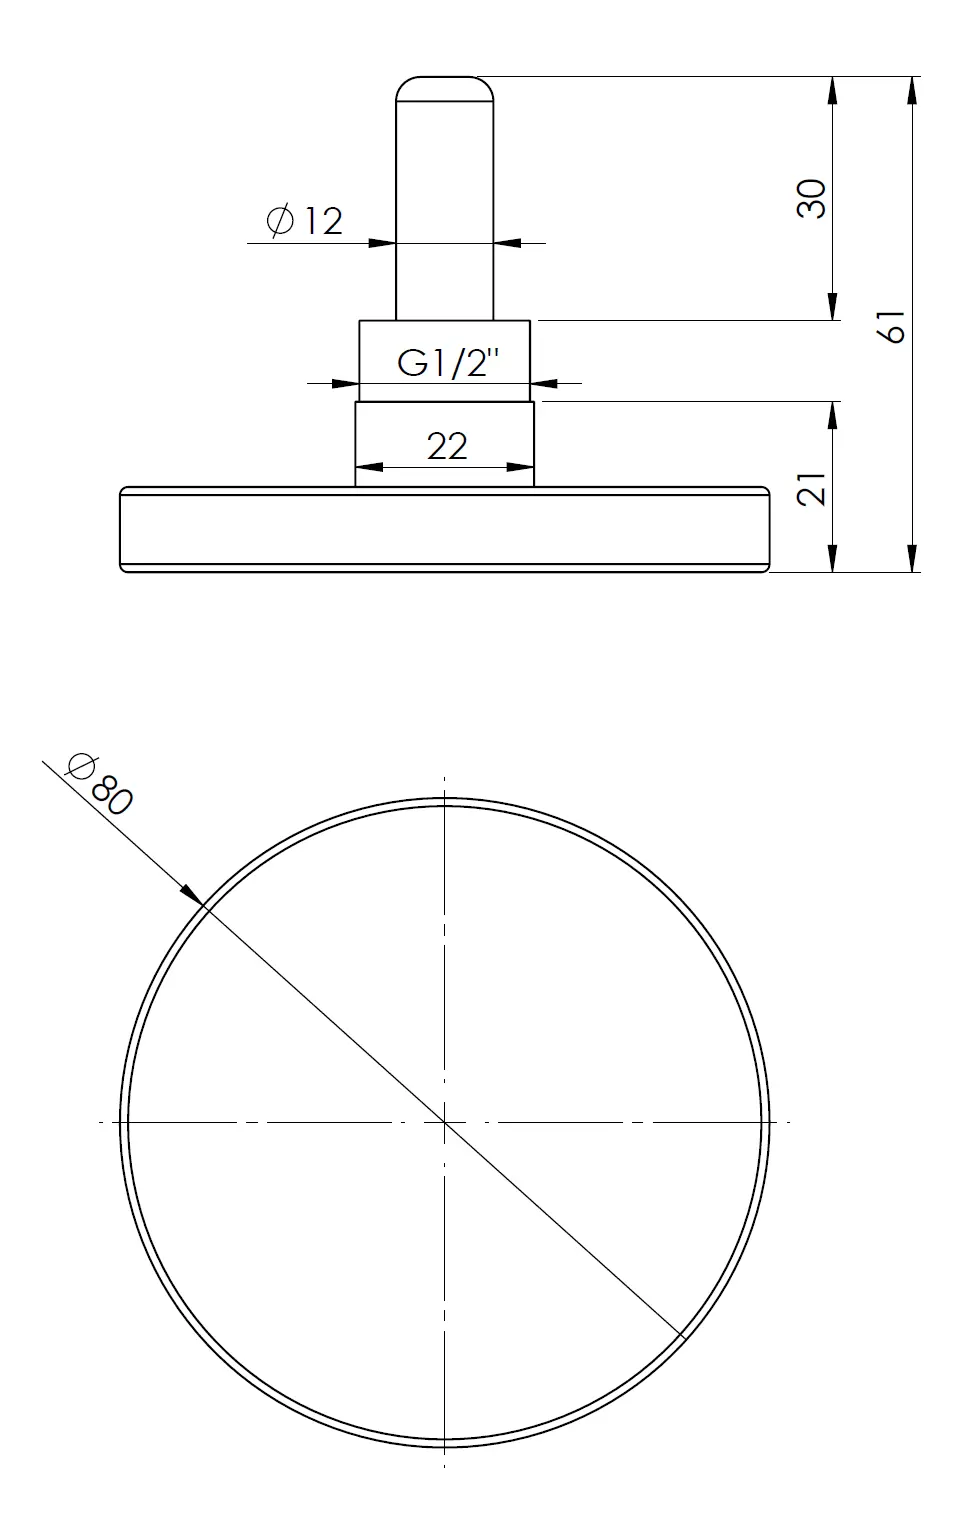 Termometr bimetaliczny BiTh 80, fi80 mm, 0÷120°C, L 40 mm, G1/2", ax, kl. 2 - budowa